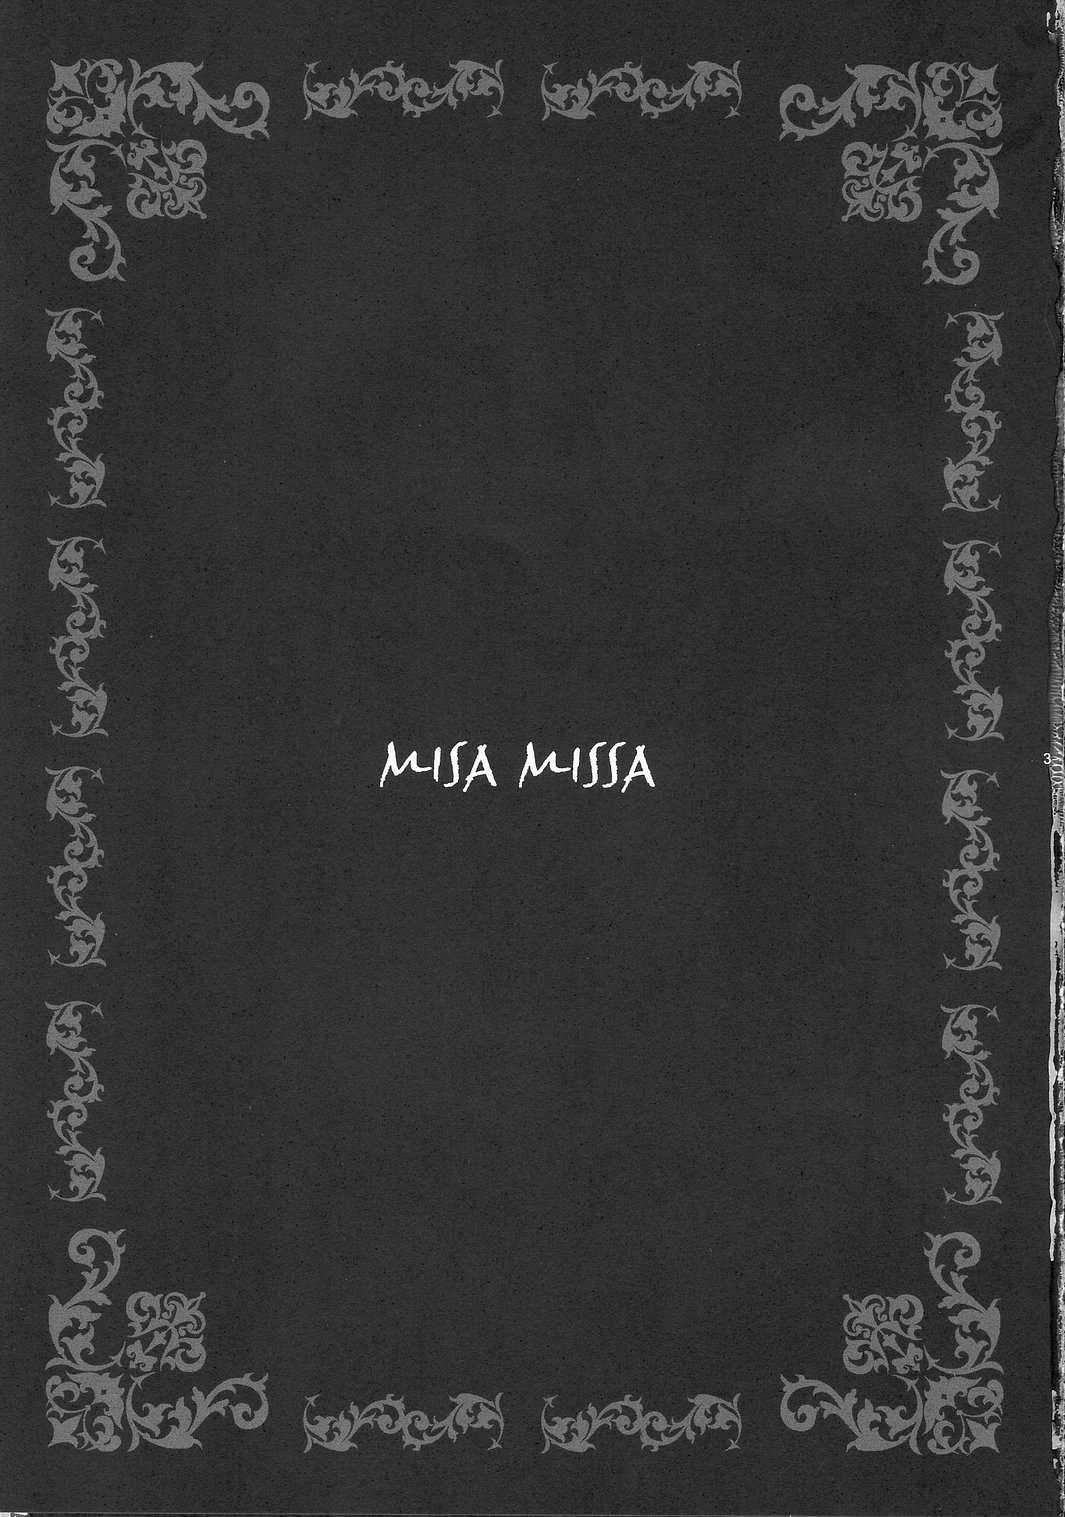 Misa Missa (Death Note) 